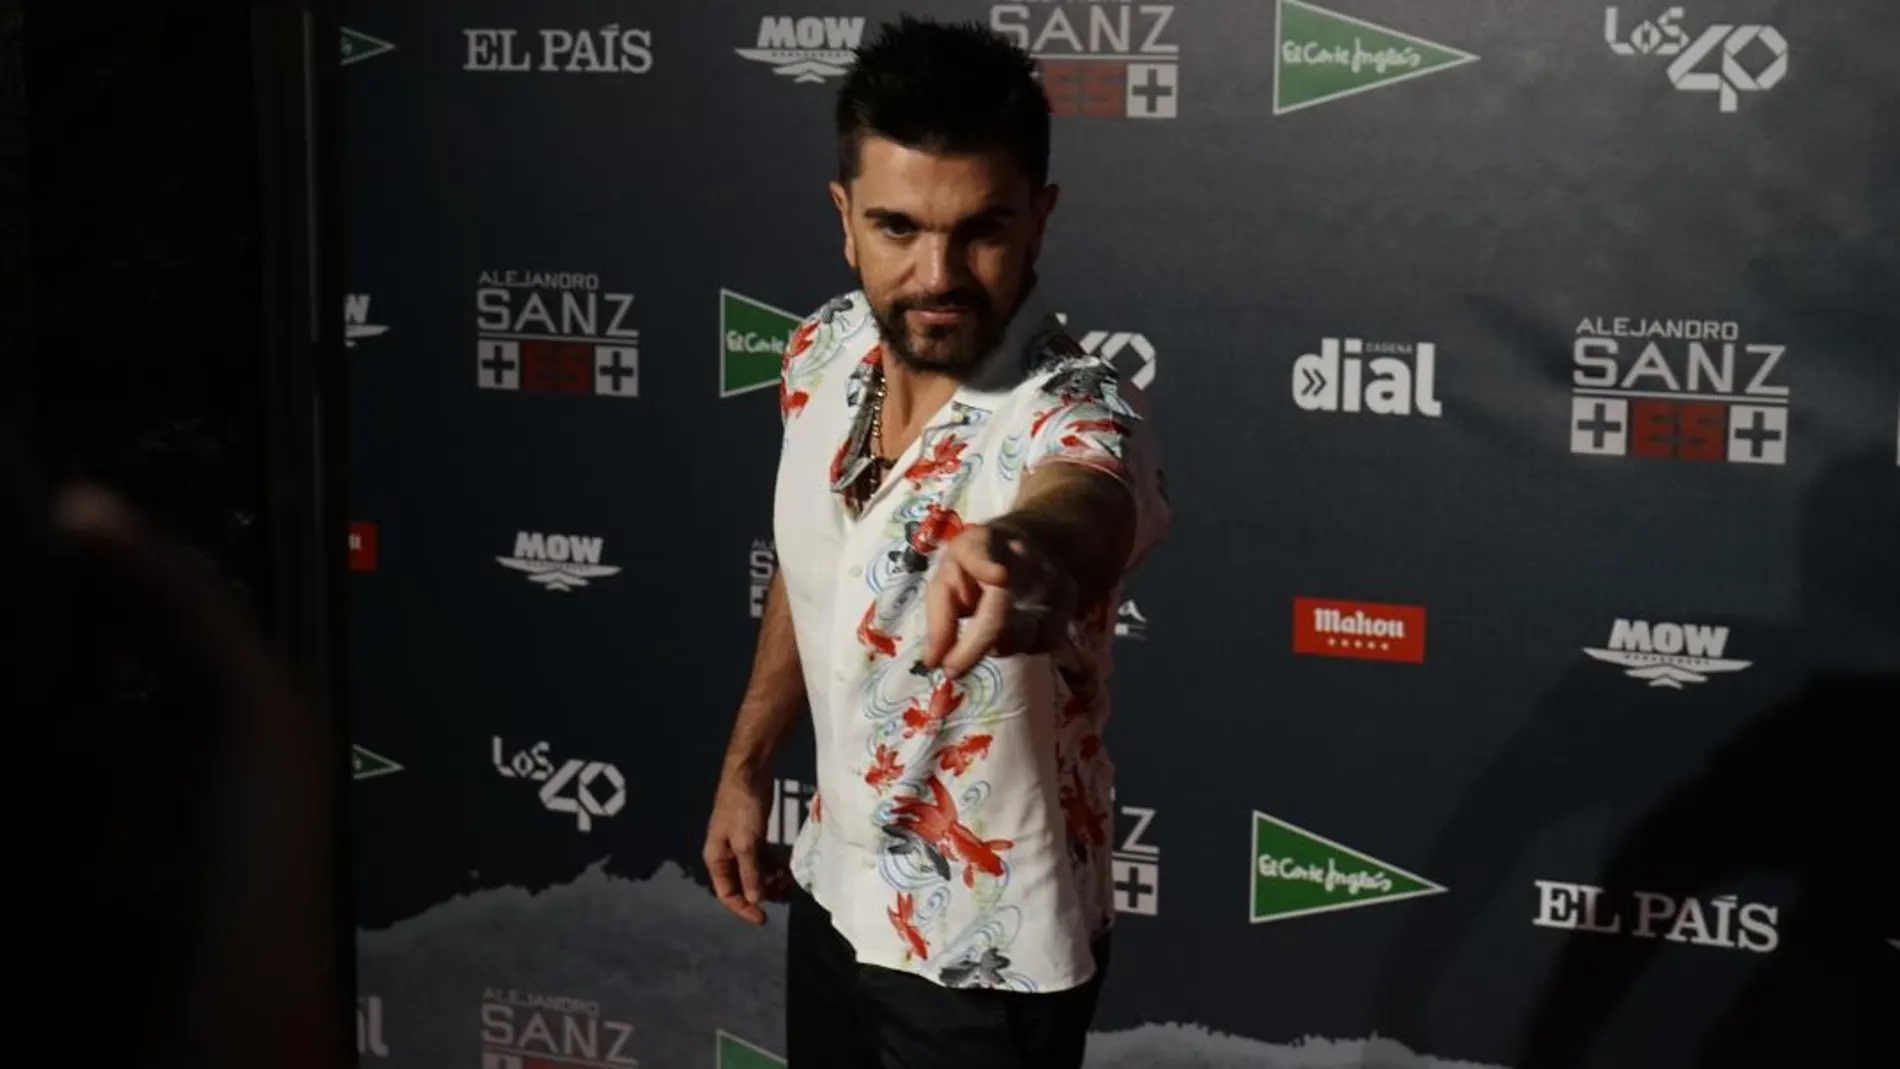 El artista Juanes actúa mañana 9 de agosto en Jerez de la Frontera